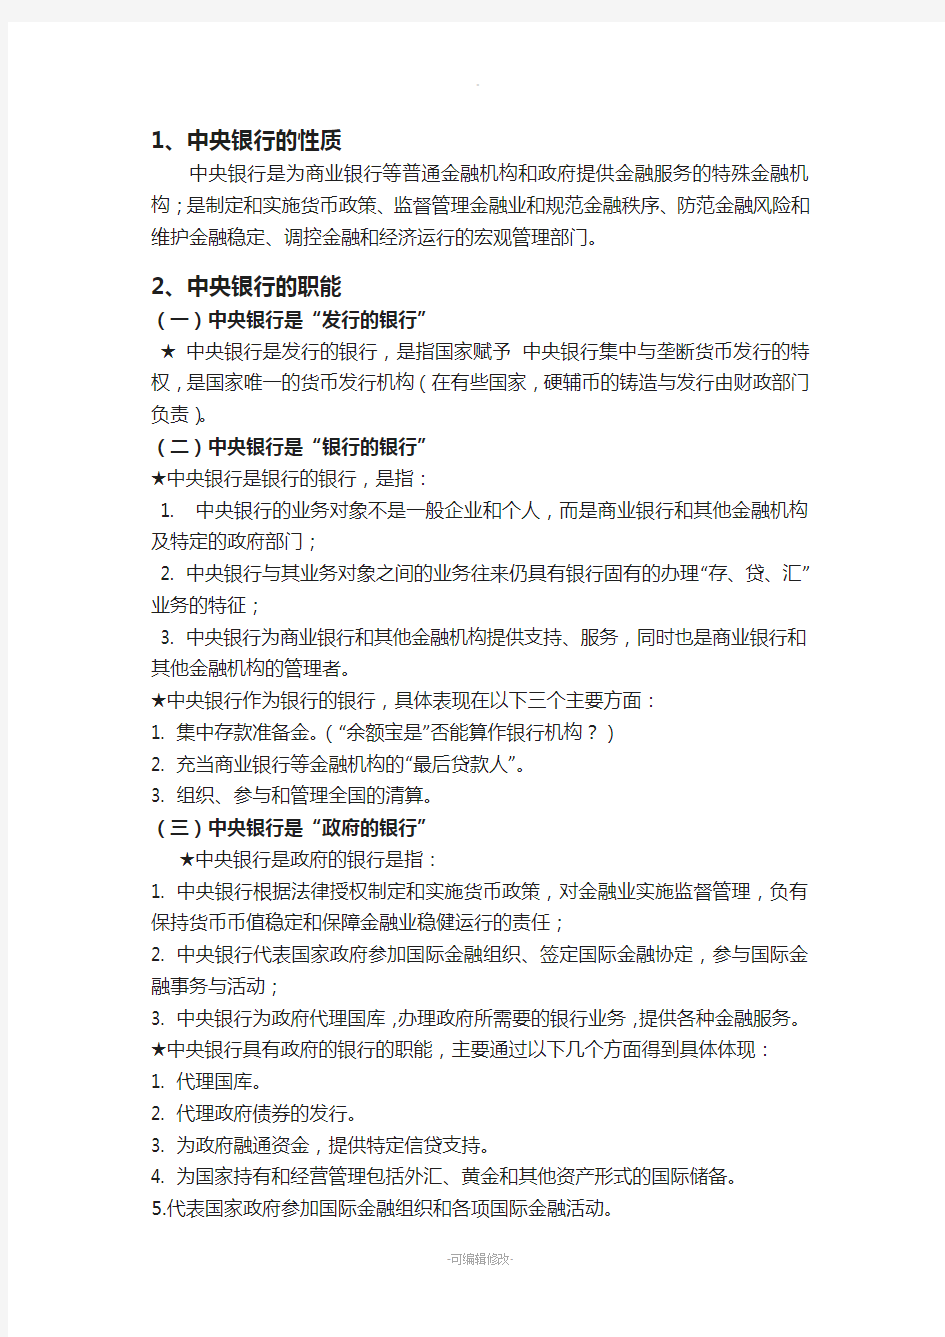 王广谦第三版中央银行学期末考试重点整理